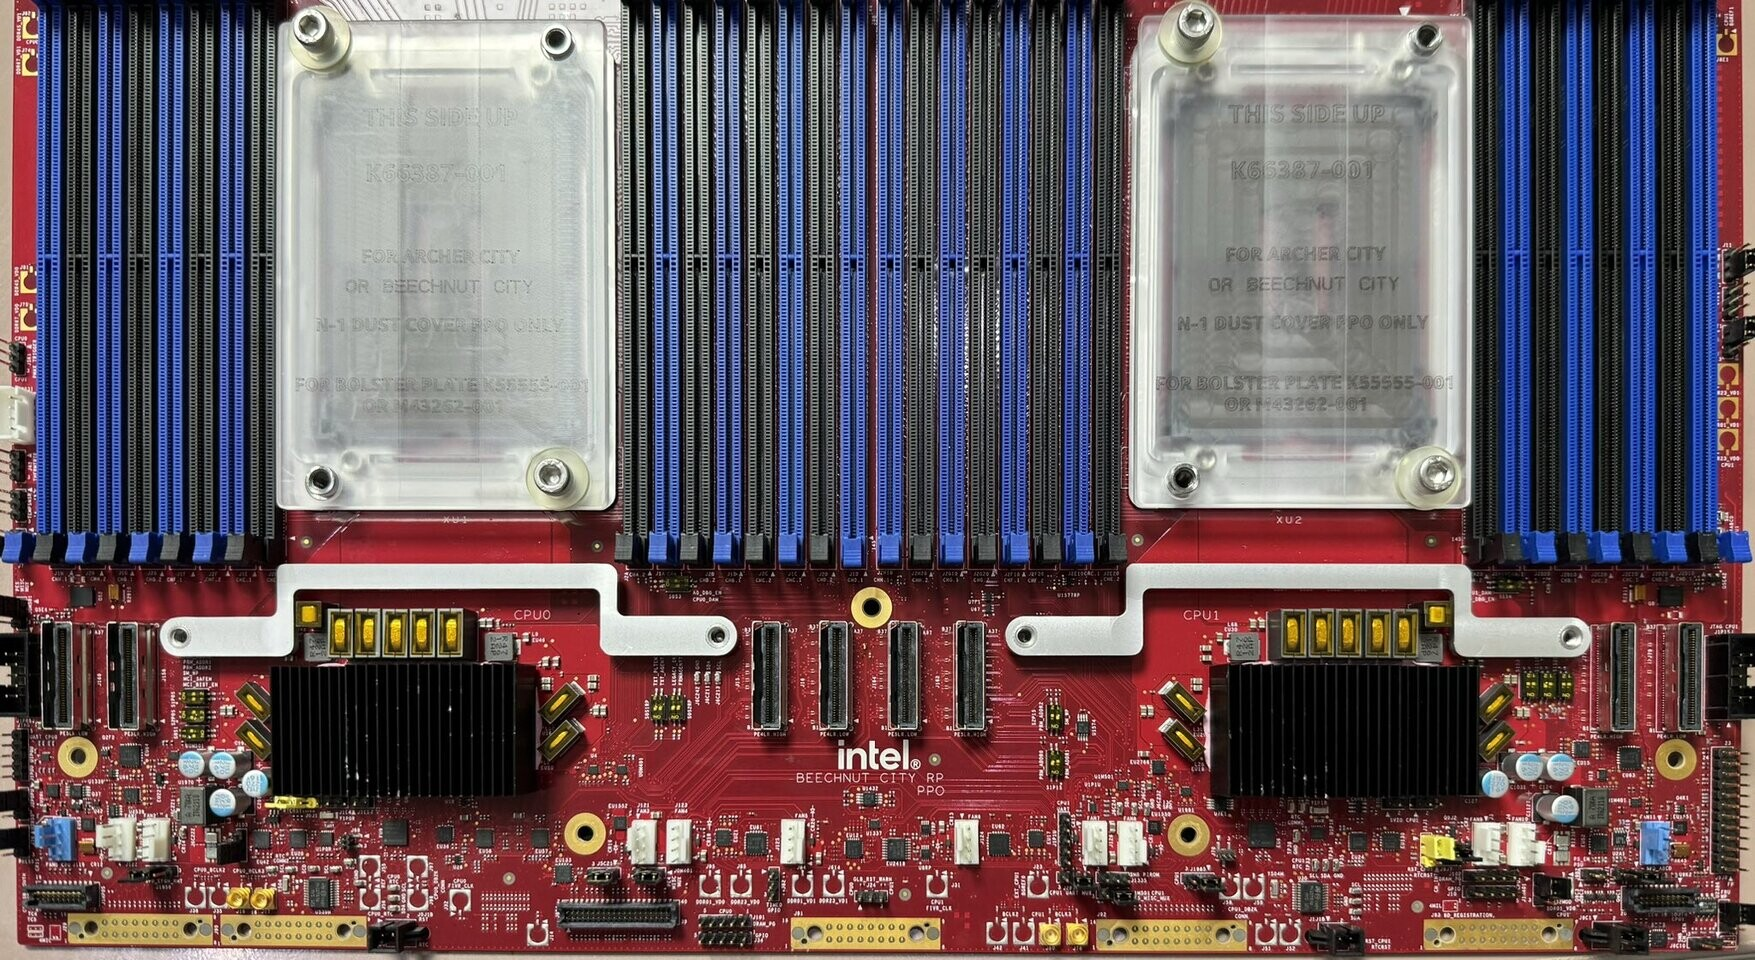 В интернете появились фото материнской платы «Beechnut City» для тестирования процессоров Intel Xeon 6 «Granite Rapids» и «Sierra Forest».